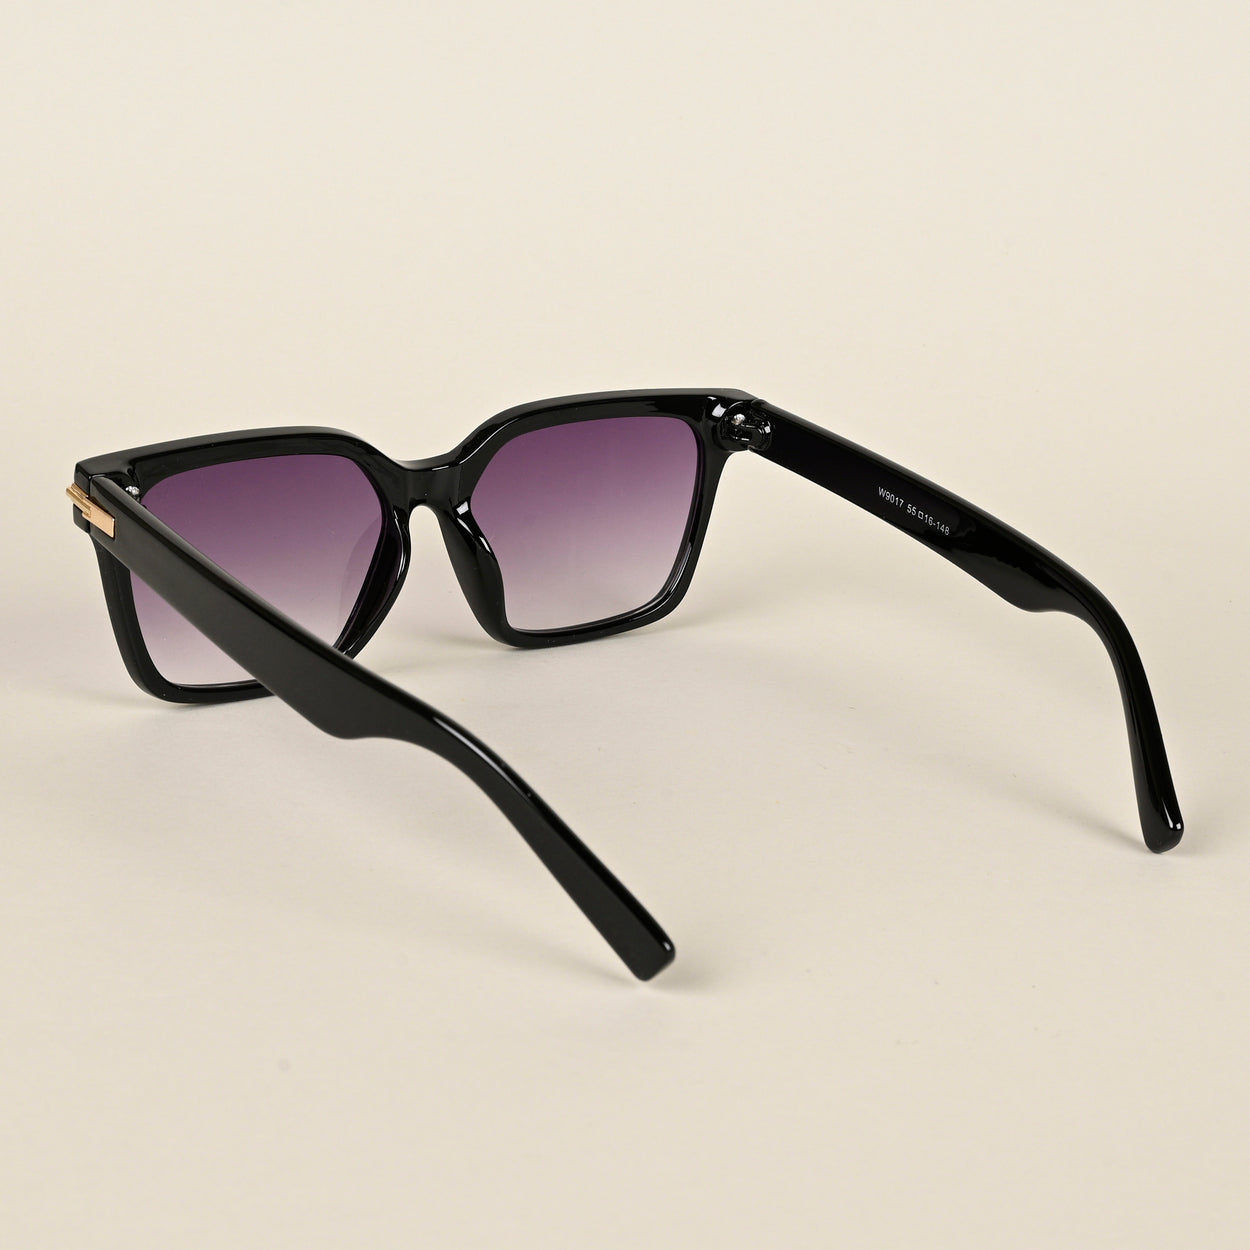 Voyage Purple & Clear Wayfarer Sunglasses for Women (W9017MG4252)